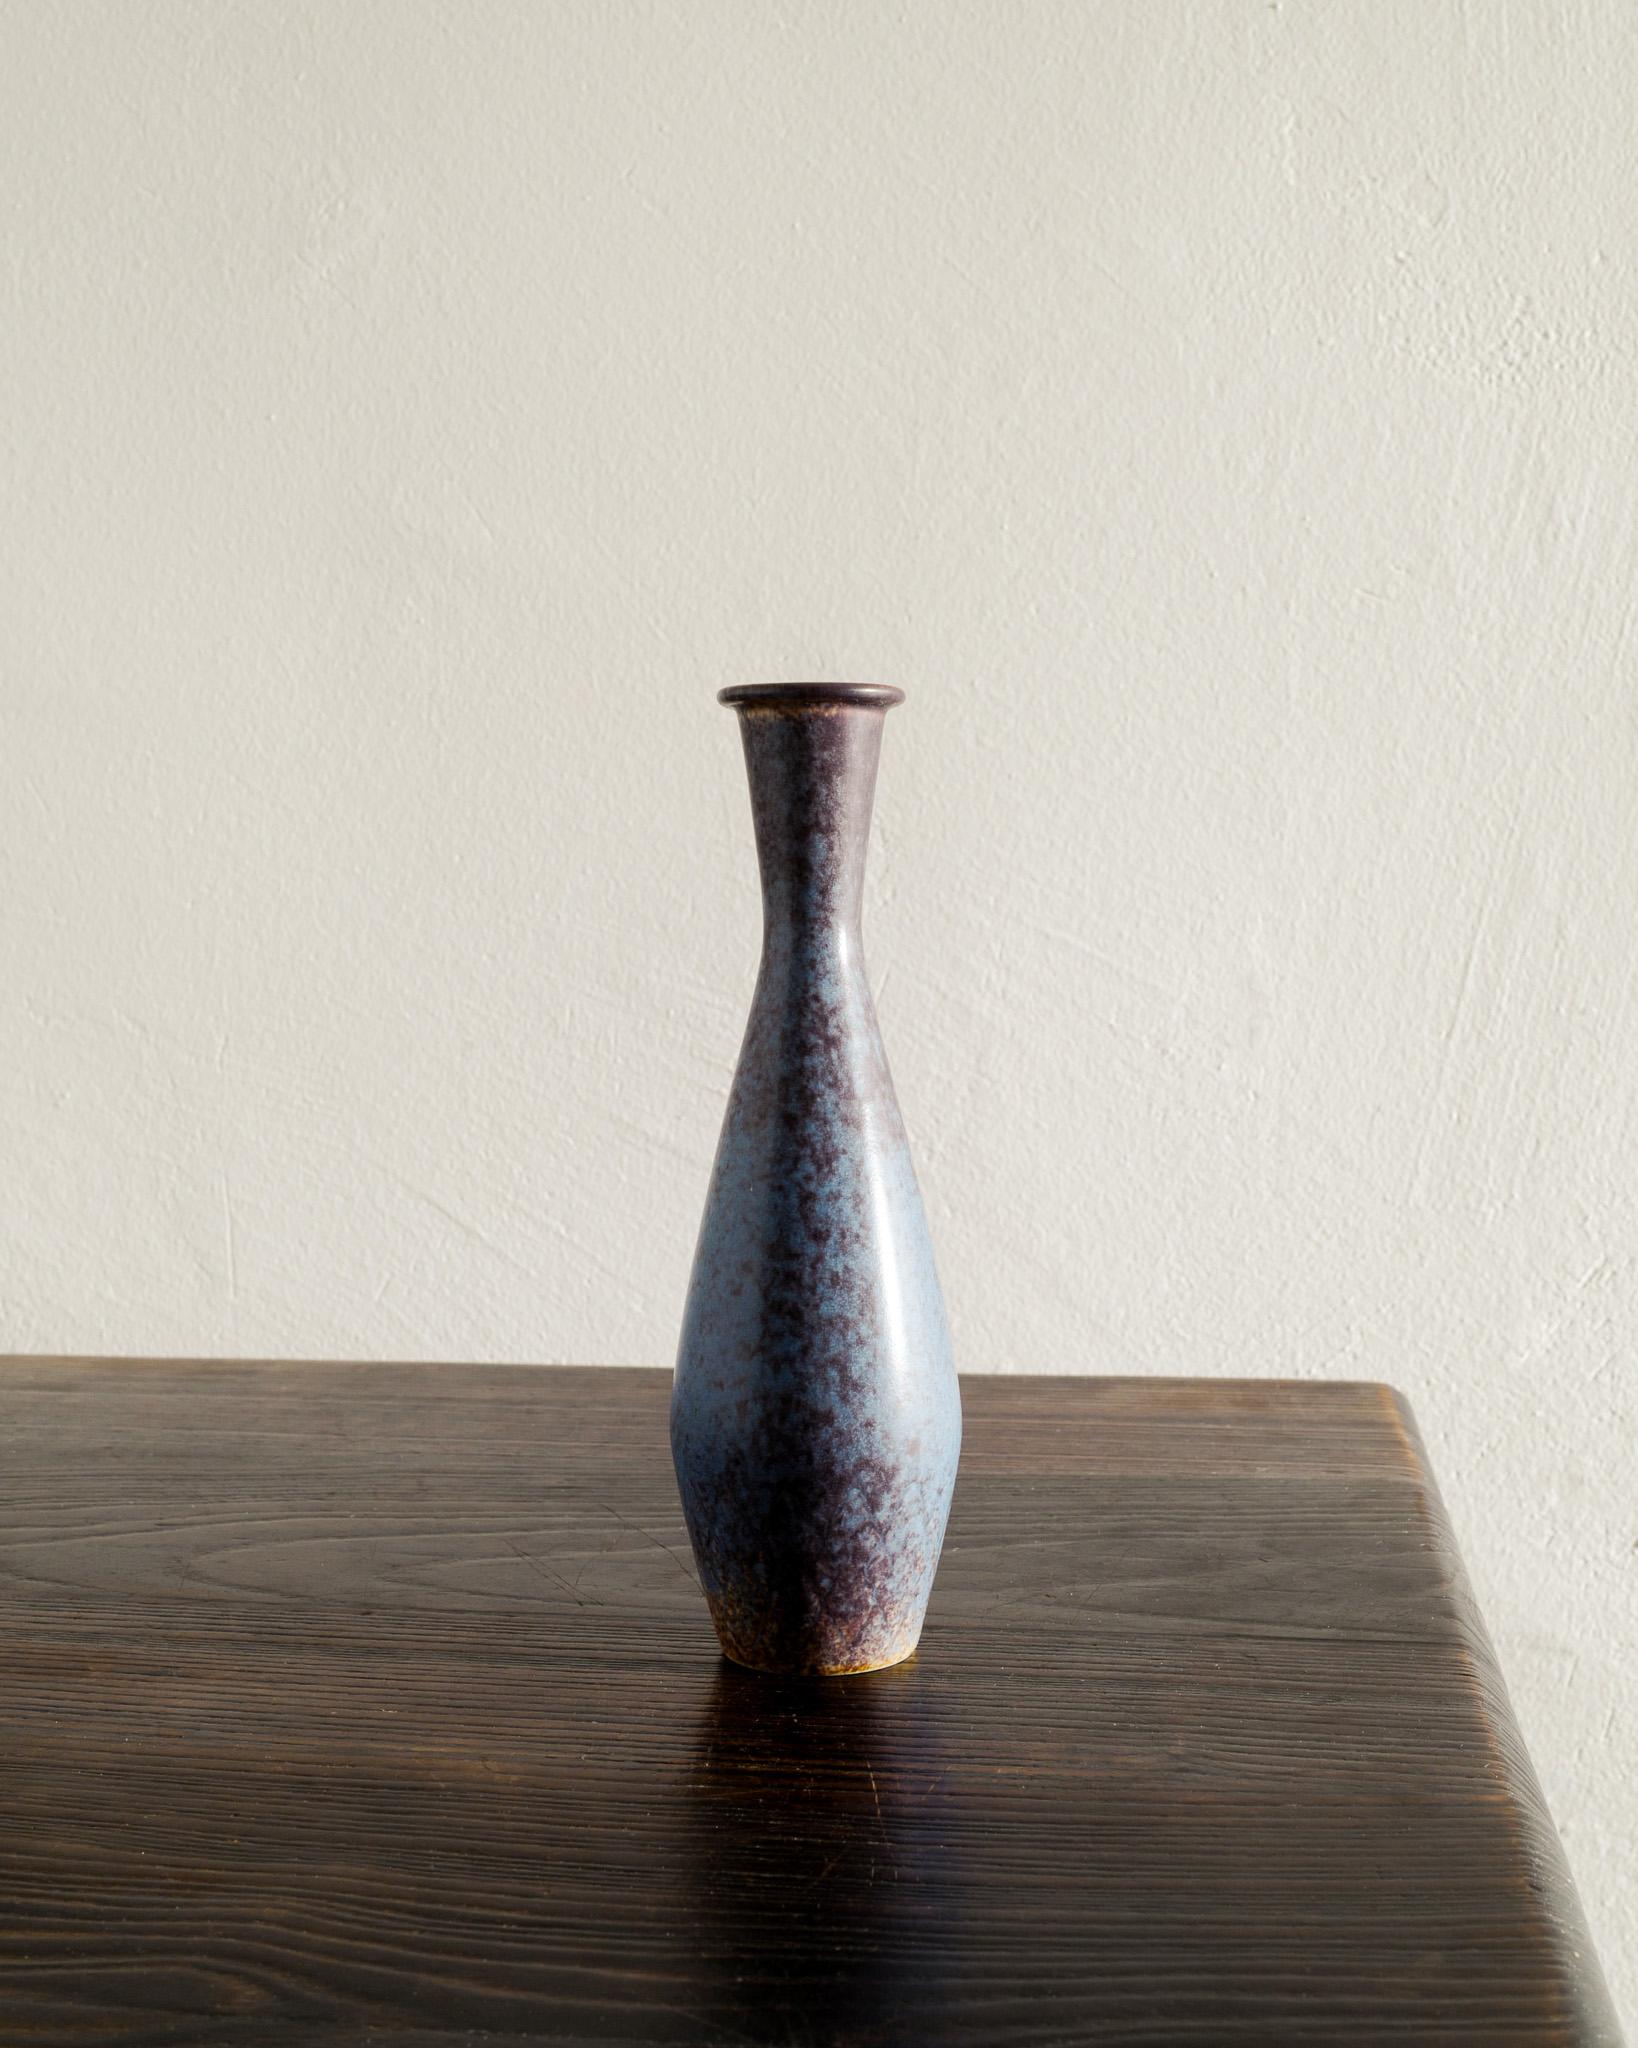 Seltene runde Vase aus Keramik/Steingut in blau-brauner Glasur von Gunnar Nylund, hergestellt von Rörstrand Schweden in den 1950er Jahren. In gutem Zustand. Unterzeichnet 